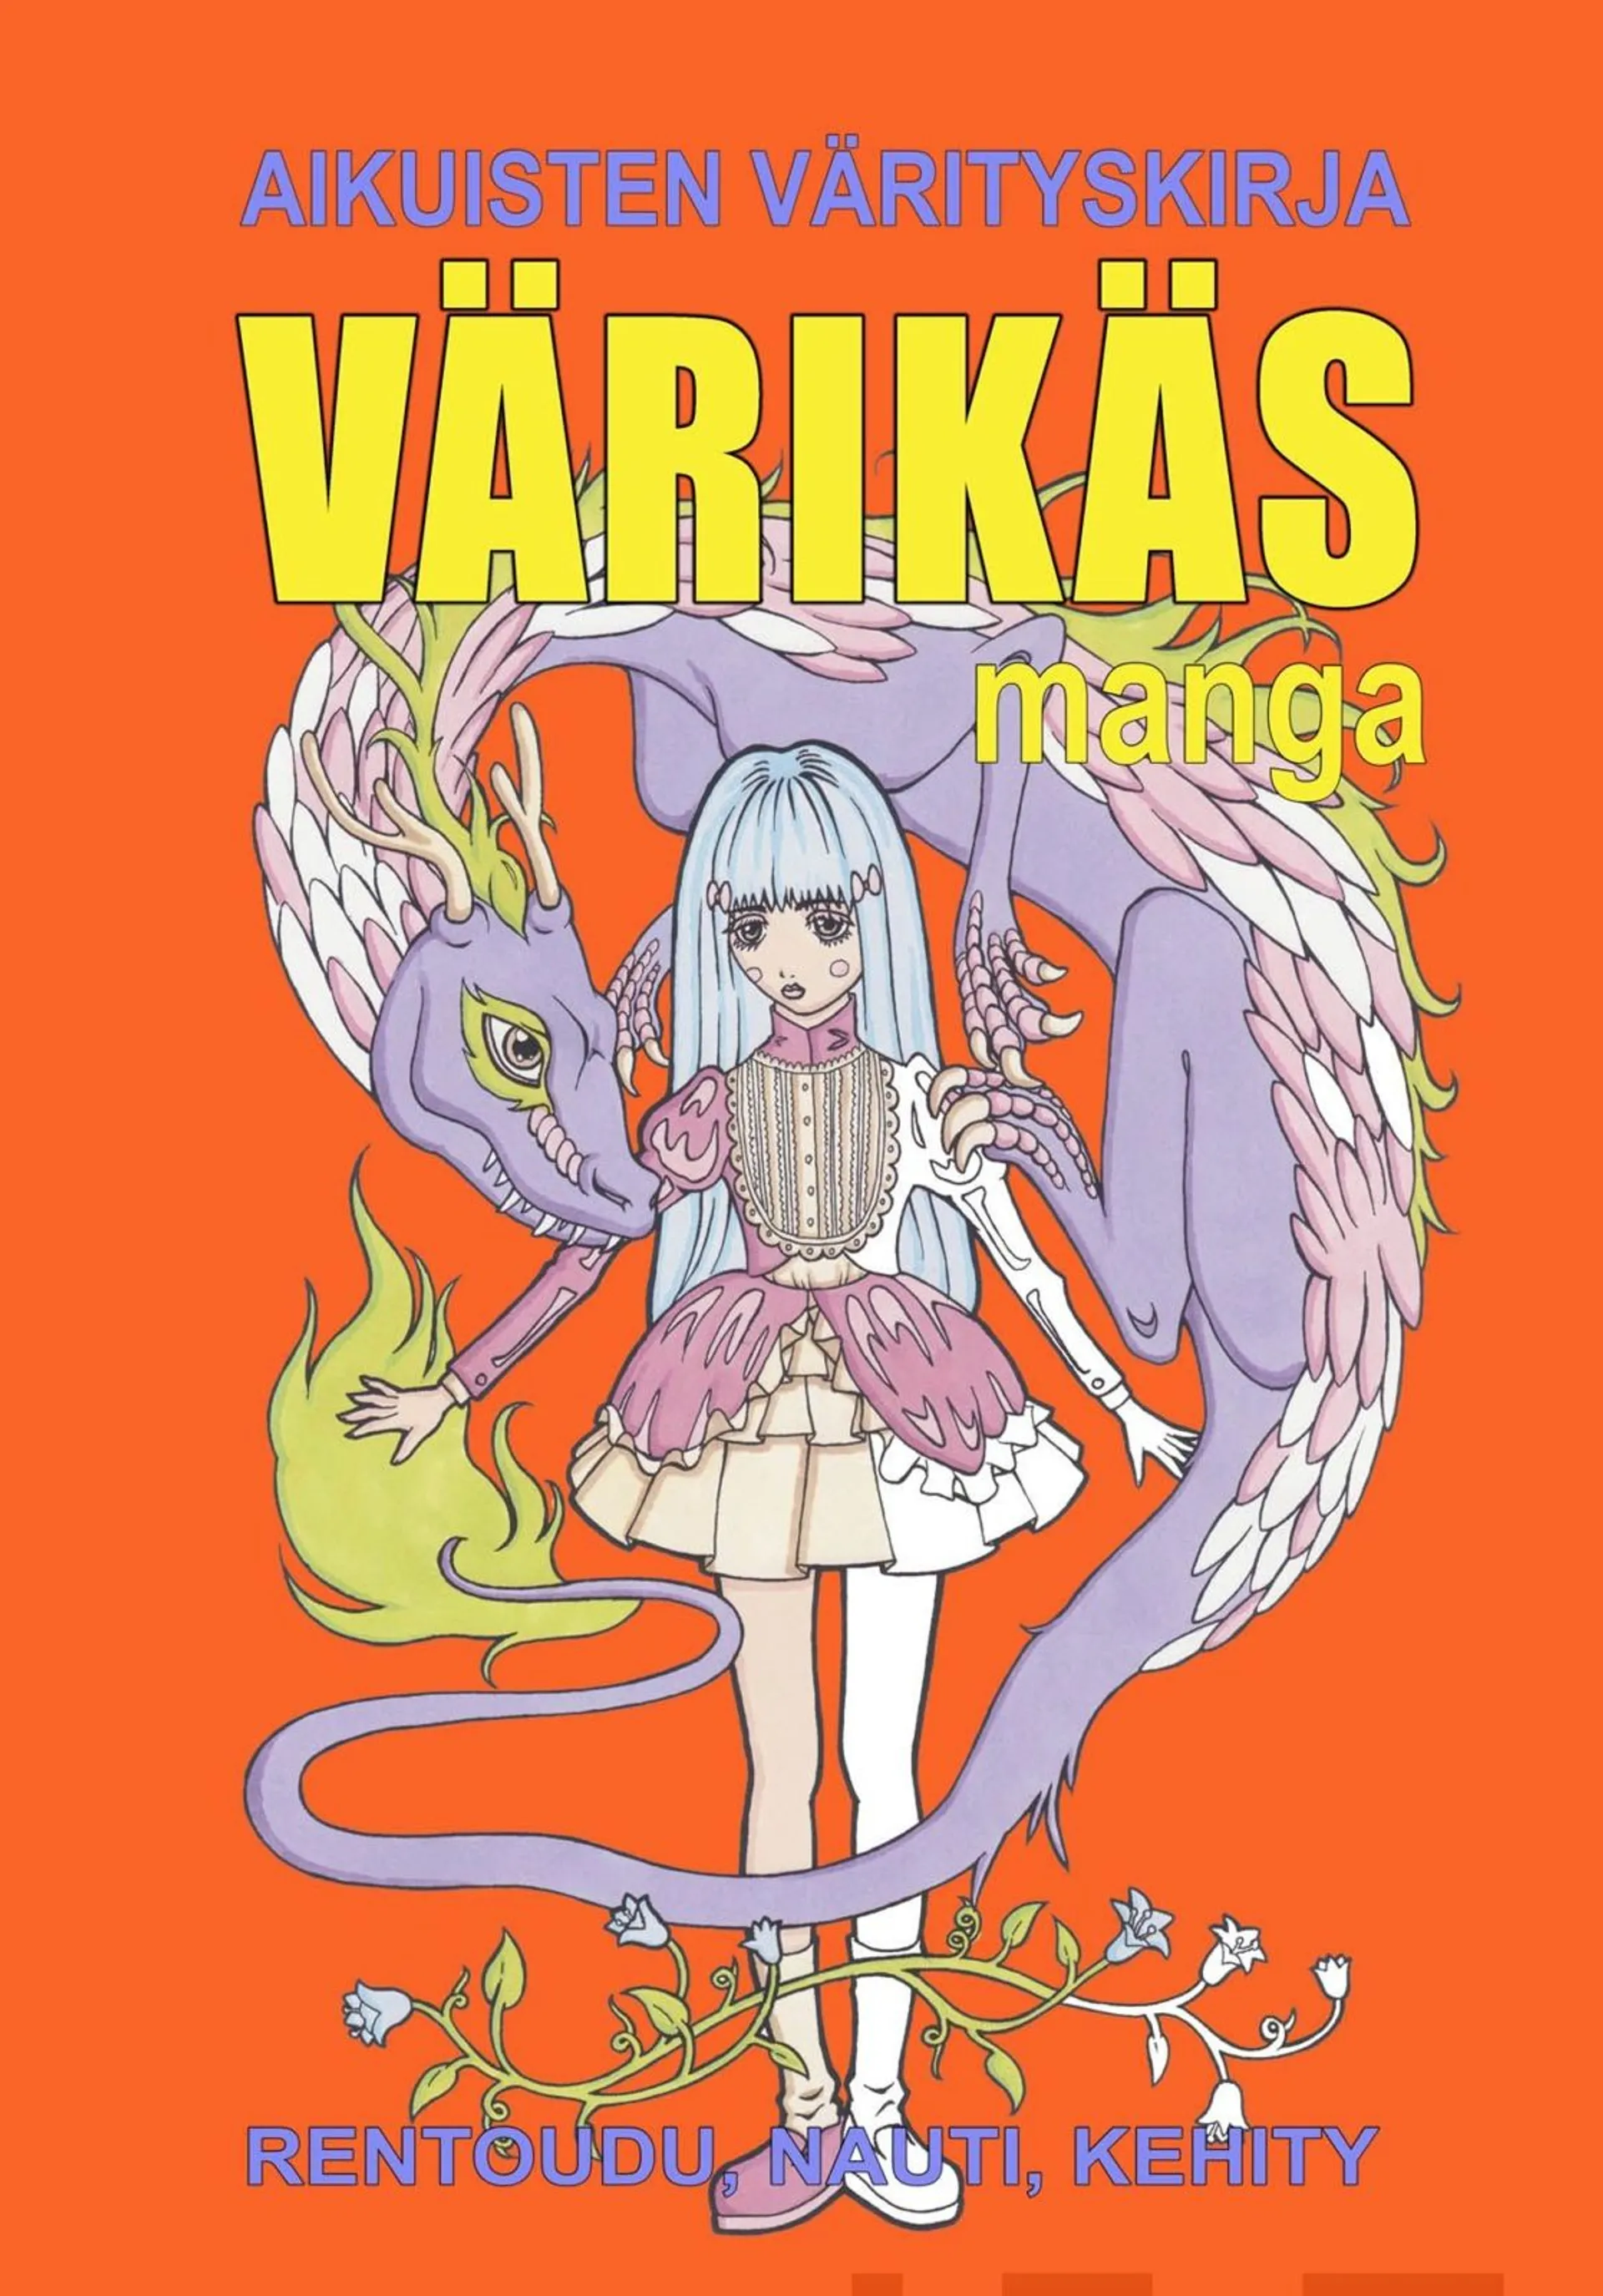 Värikäs manga - Aikuisten värityskirja